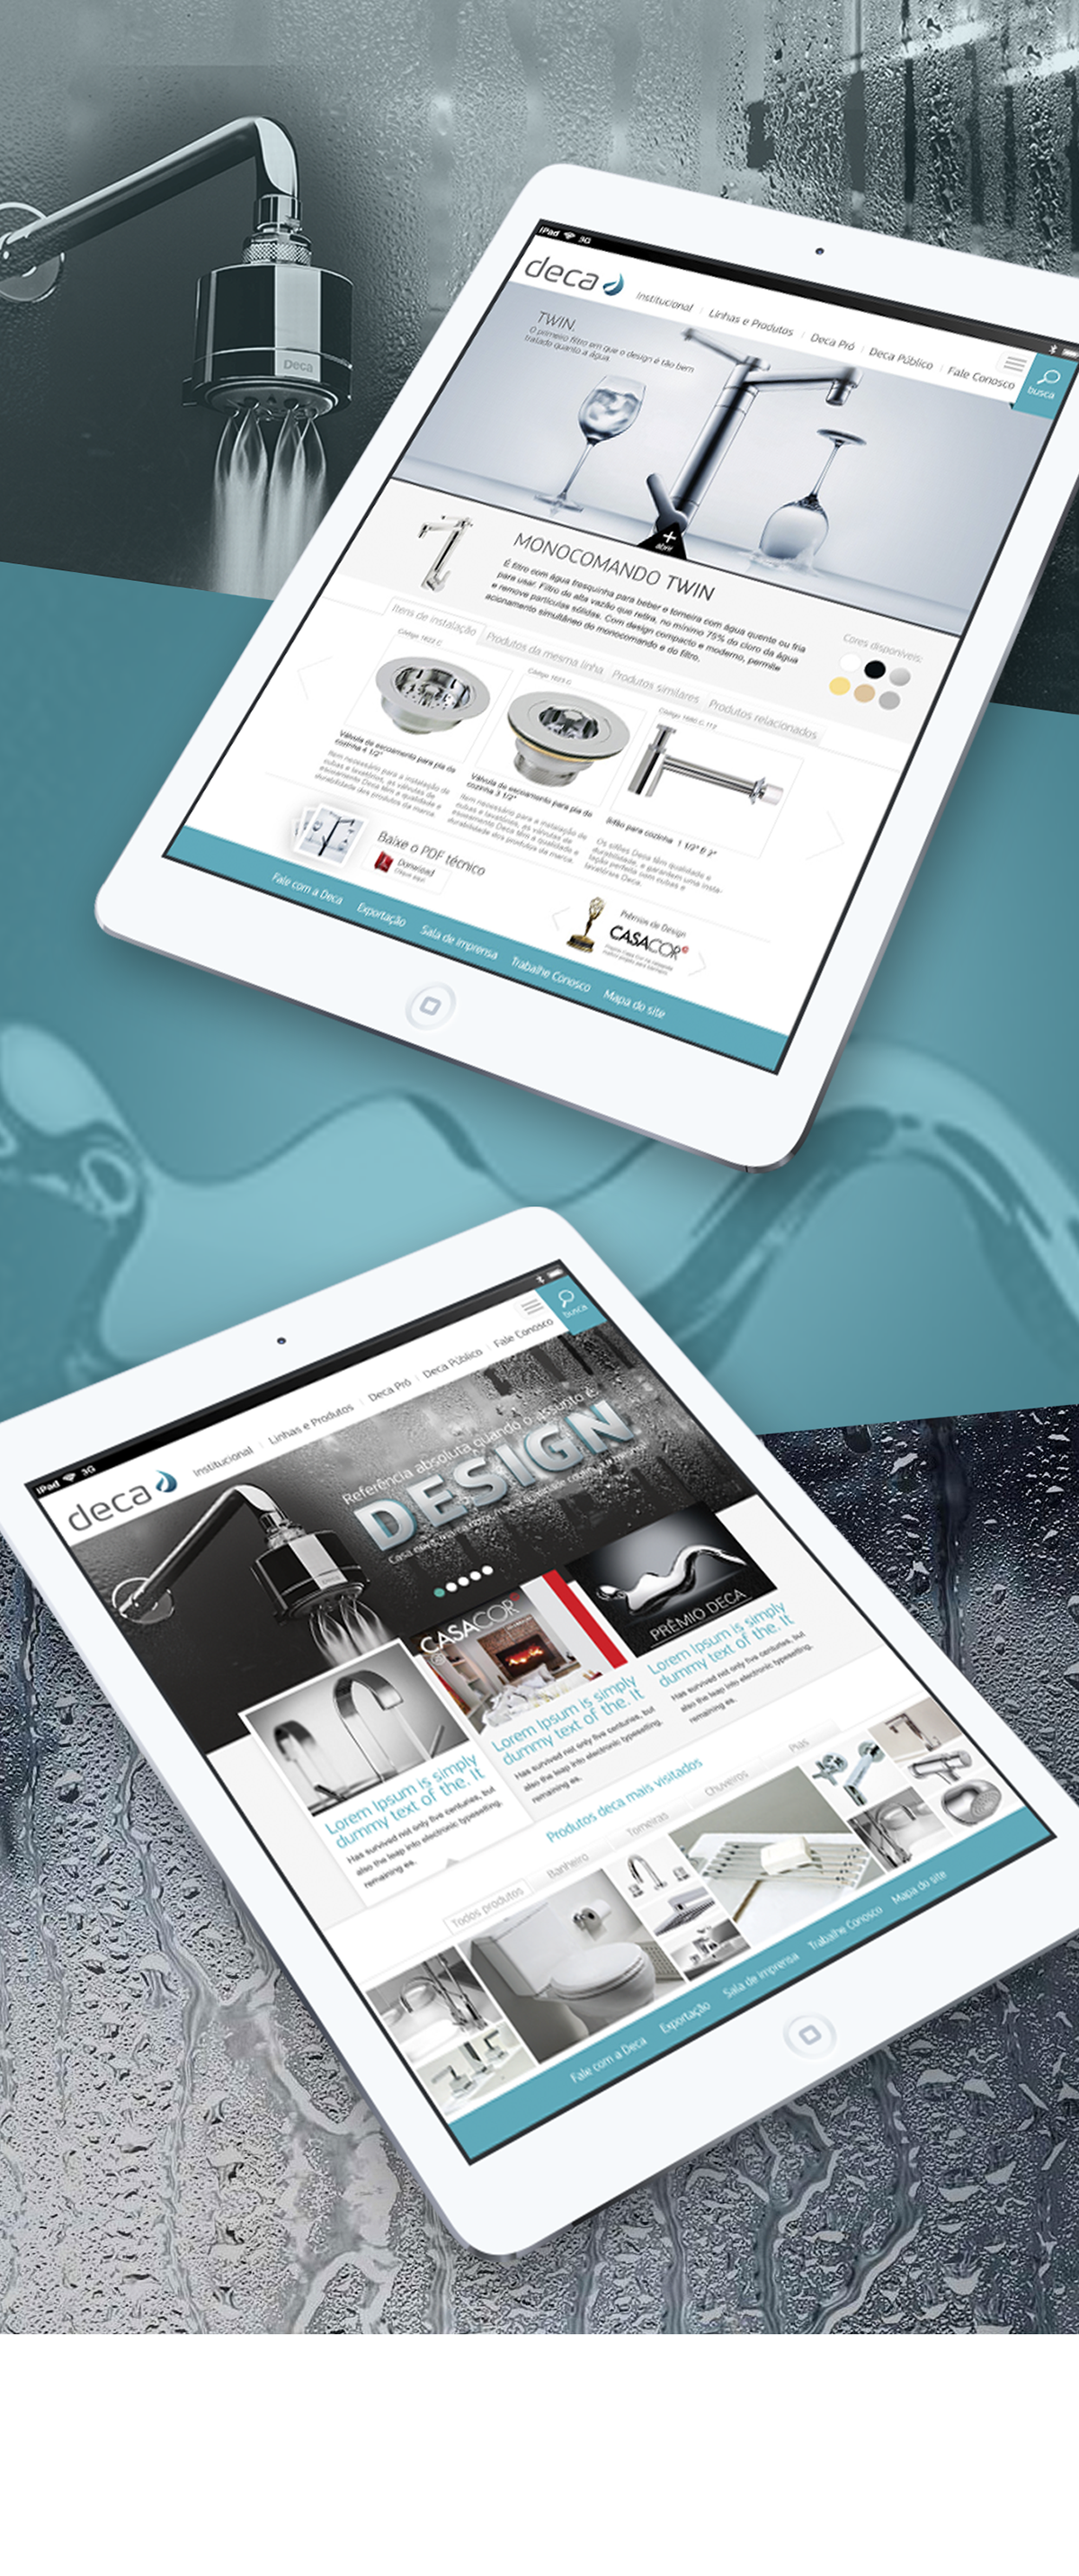 Deca louça sanitária iPad mobile ios mac aplicativo design